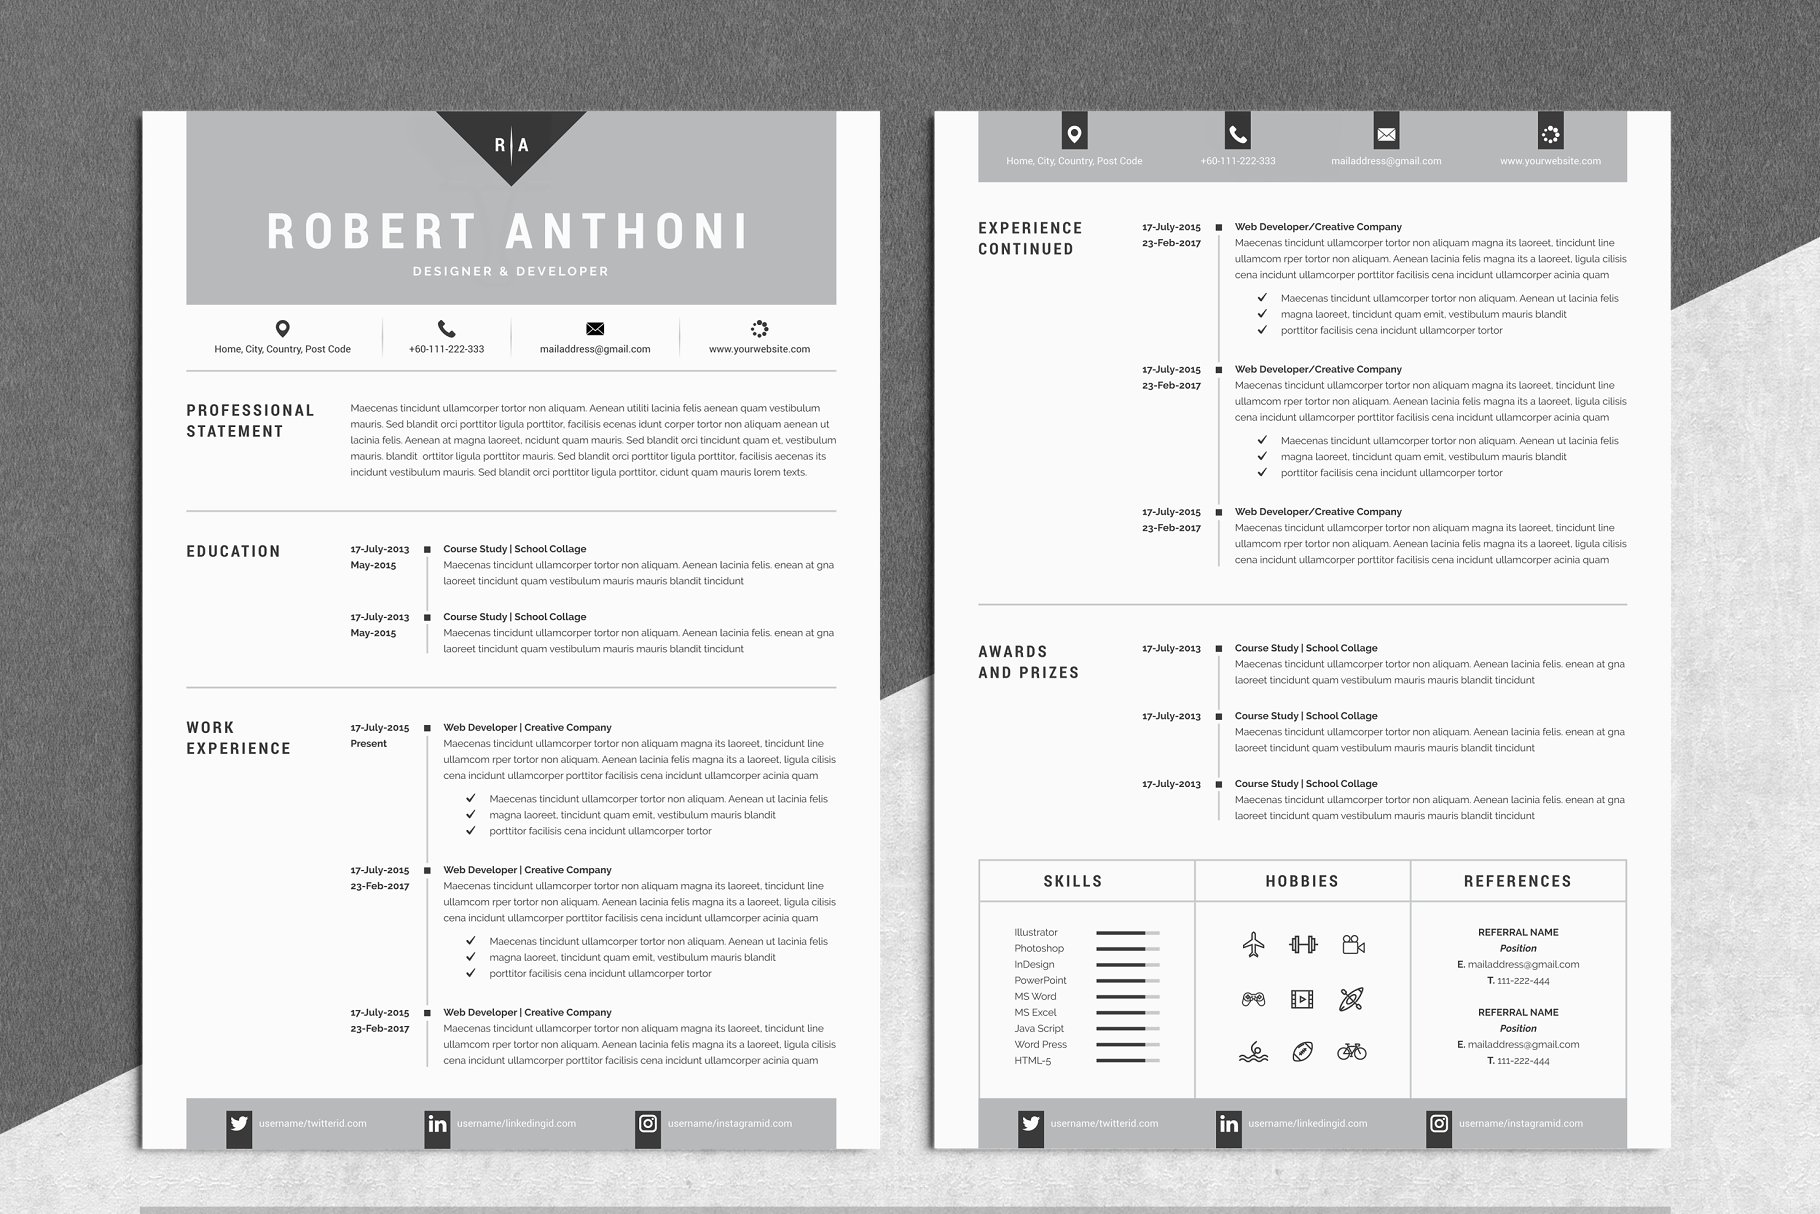 极简主义创意电子简历模板 4 Pages Creative Resume Pack插图(1)